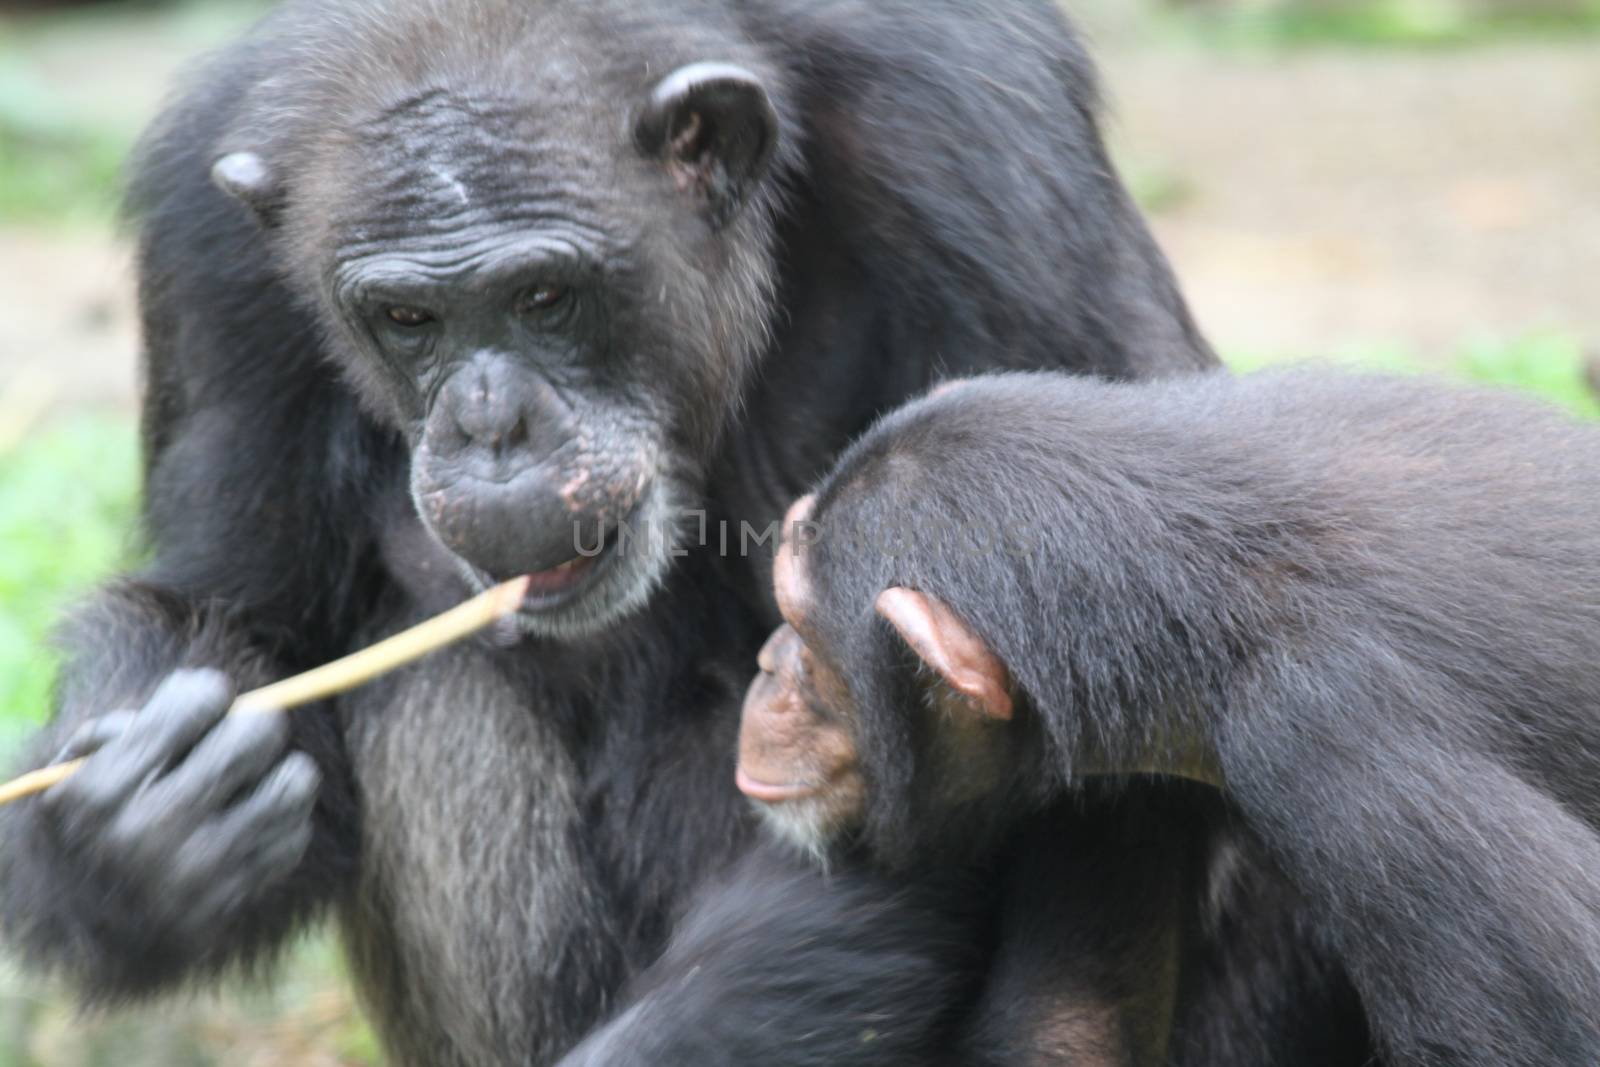 Chimpanzee by Kitch